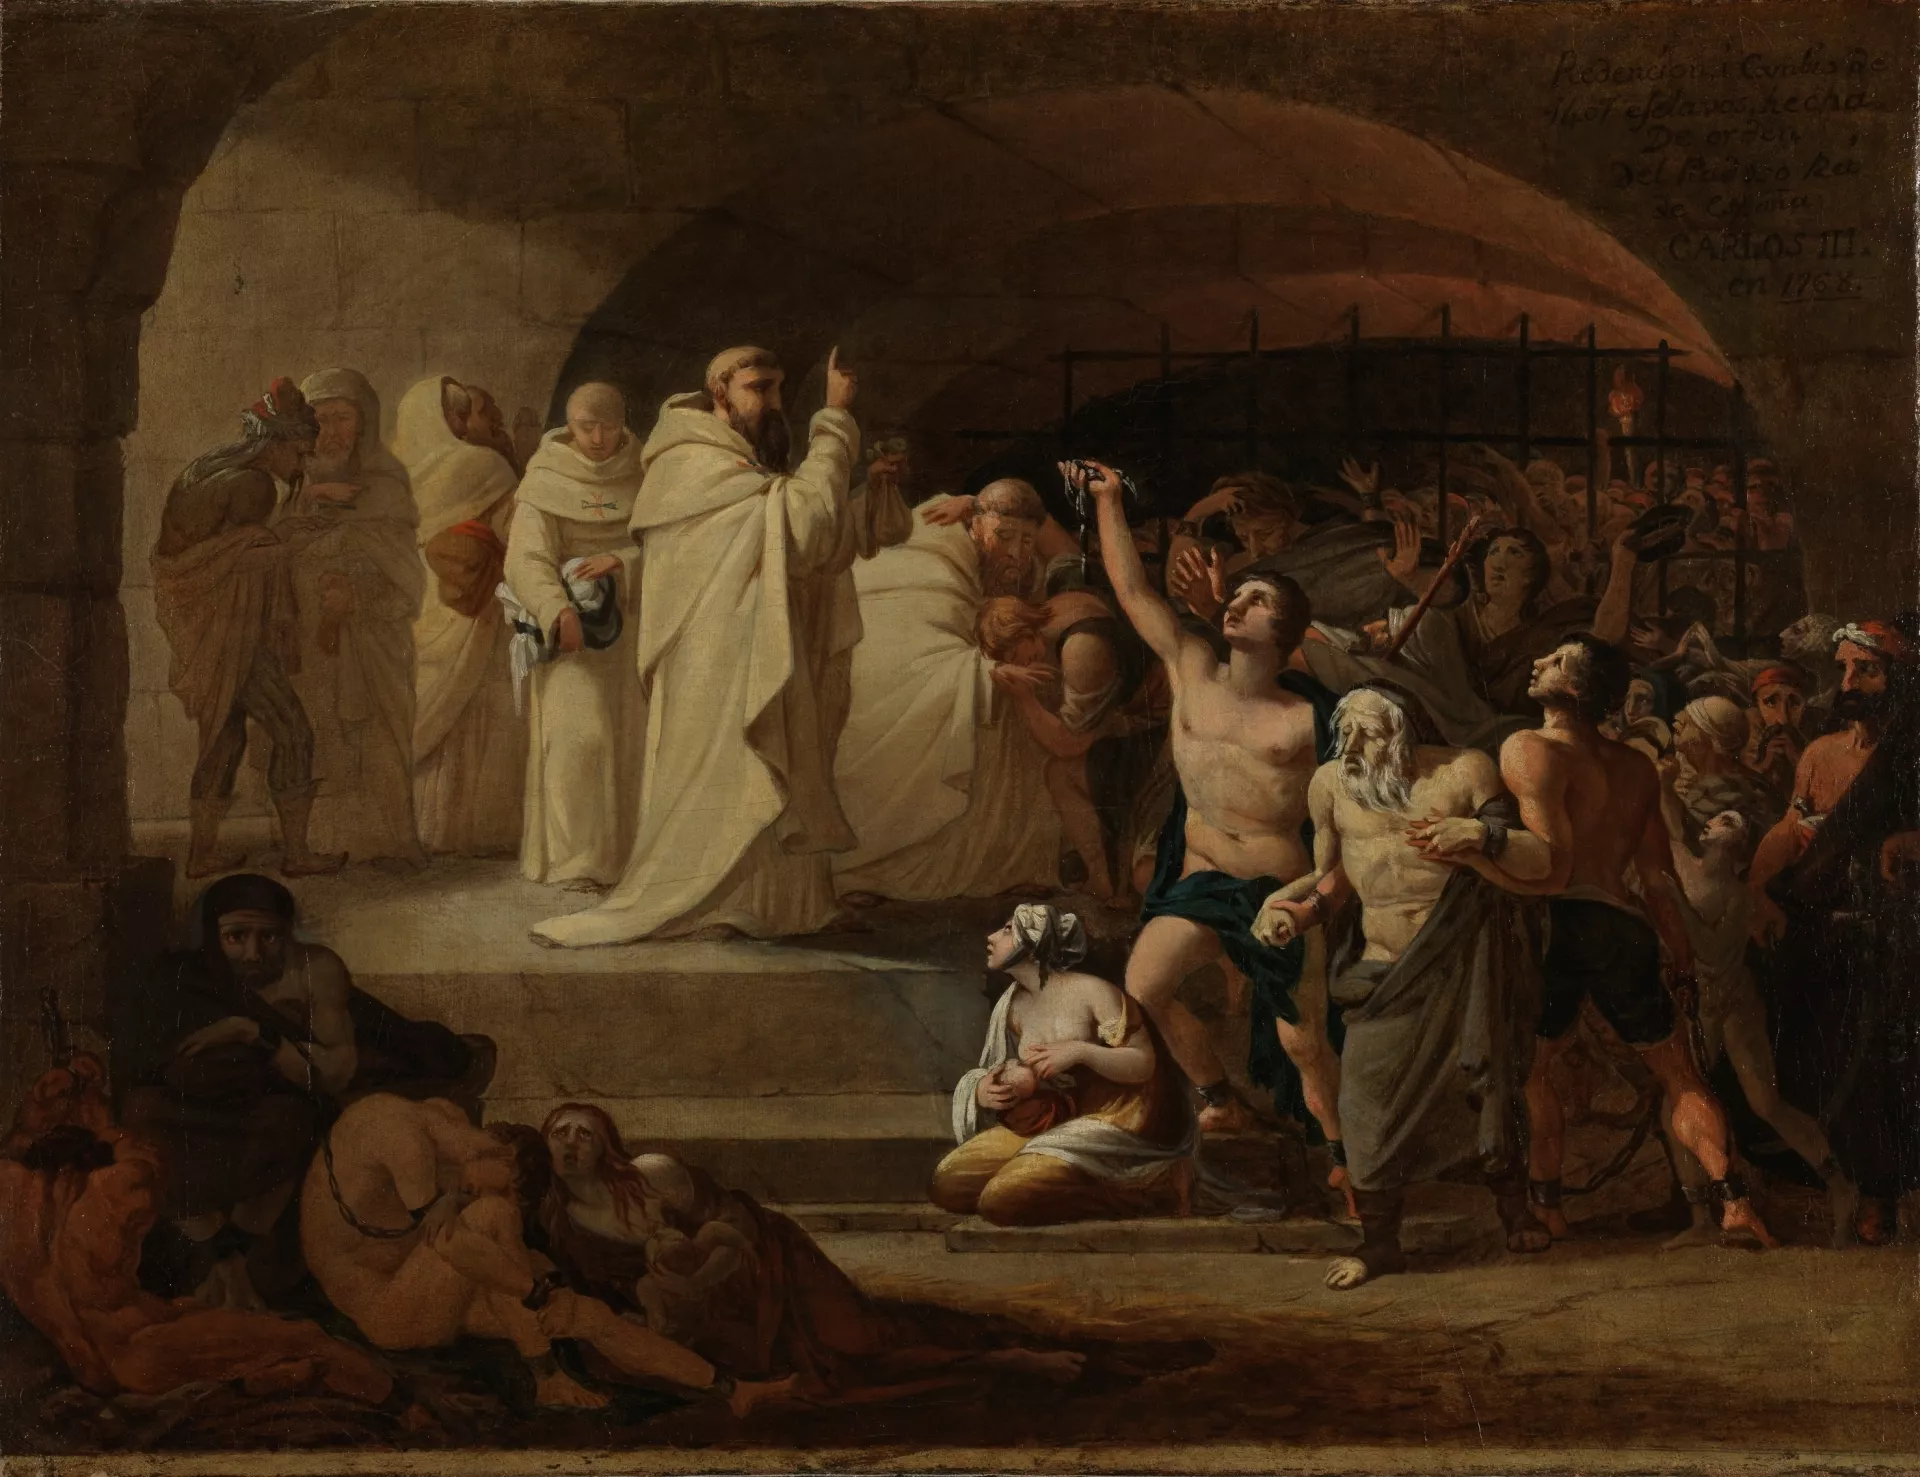 Aquest quadre del pintor espanyol José Aparicio recrea un dels viatges redemptors en temps de Carles III